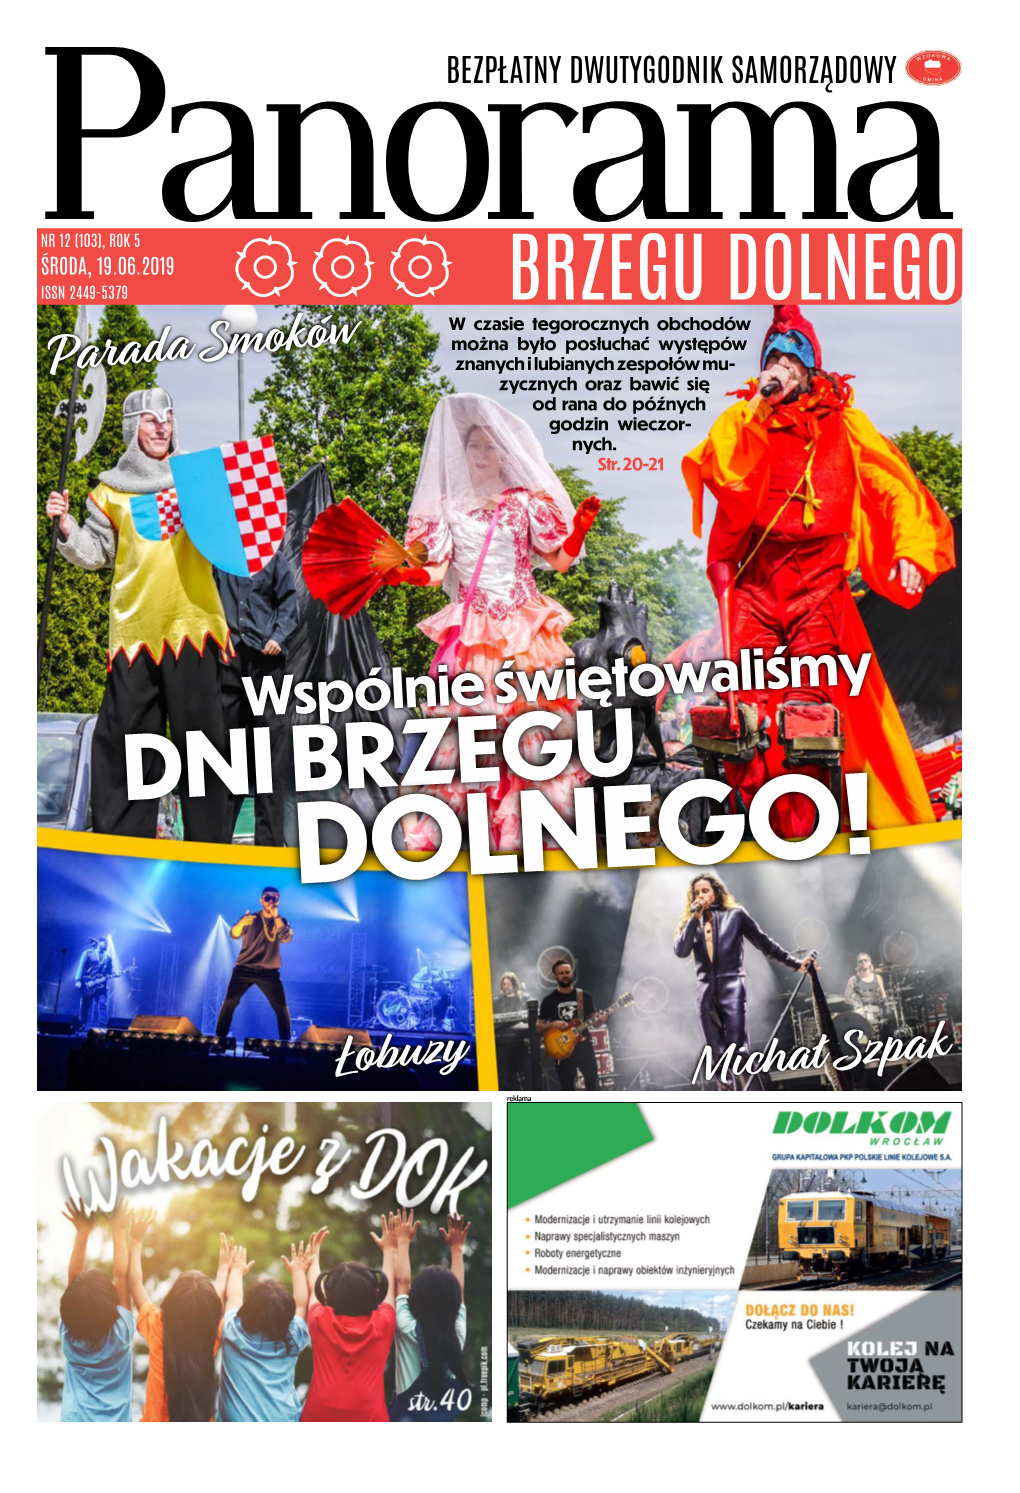 Panorama Brzegu Dolnego” Wydawca: Dolnobrzeski Ośrodek Kultury, Danuta Chłód – Dyrektor